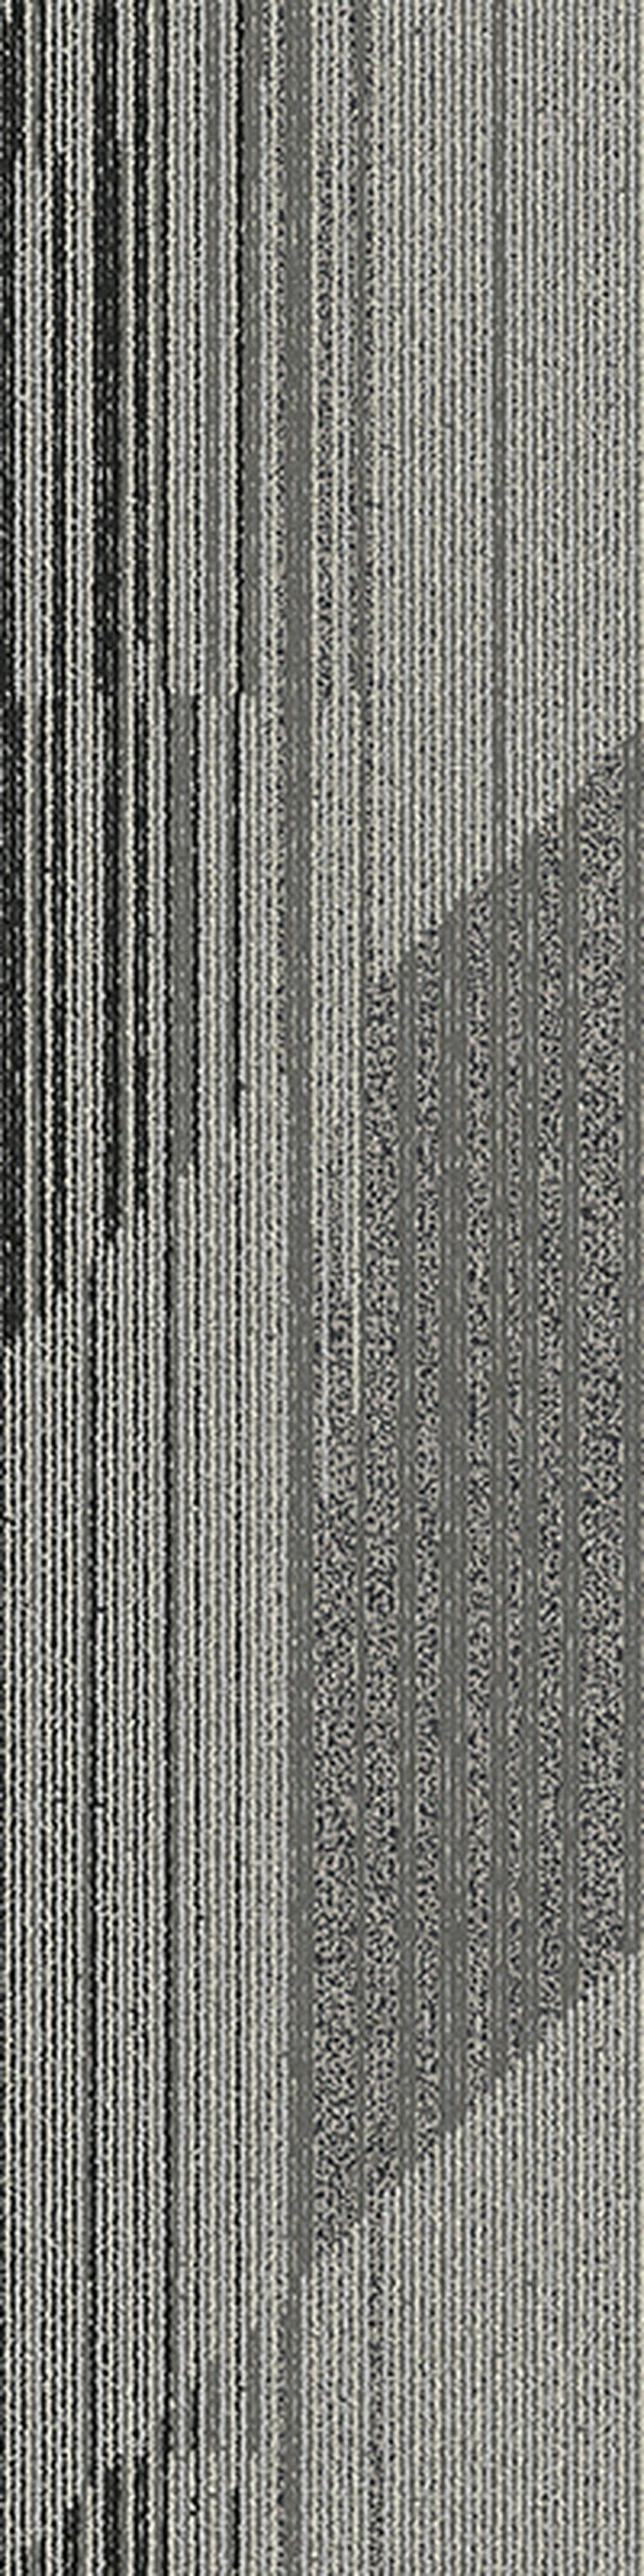 Gestreifte 'Laminat' Teppichfliesen. Bodenbelag in Grau und Braun - Teppiche - Bild 4